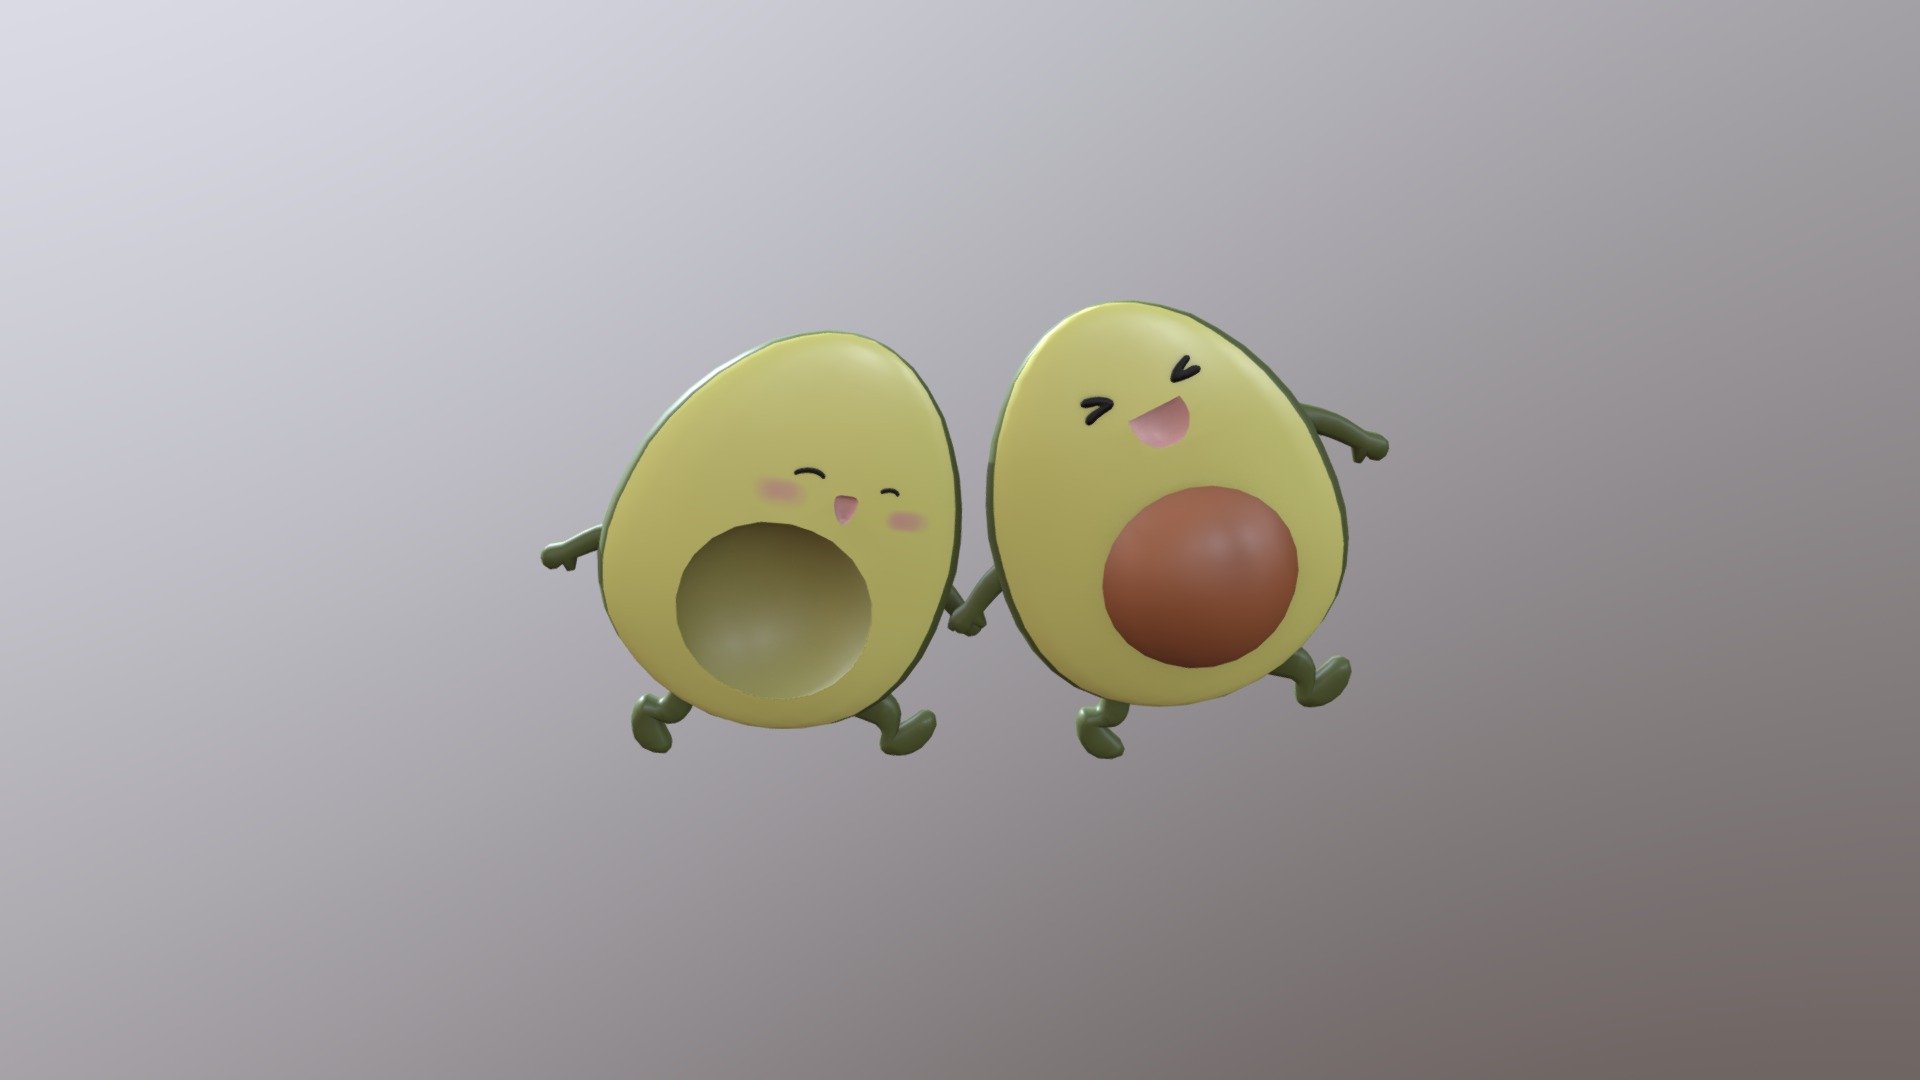 Avocado_cartoon - 3D model by DuongNgocDoanThuy 3d model